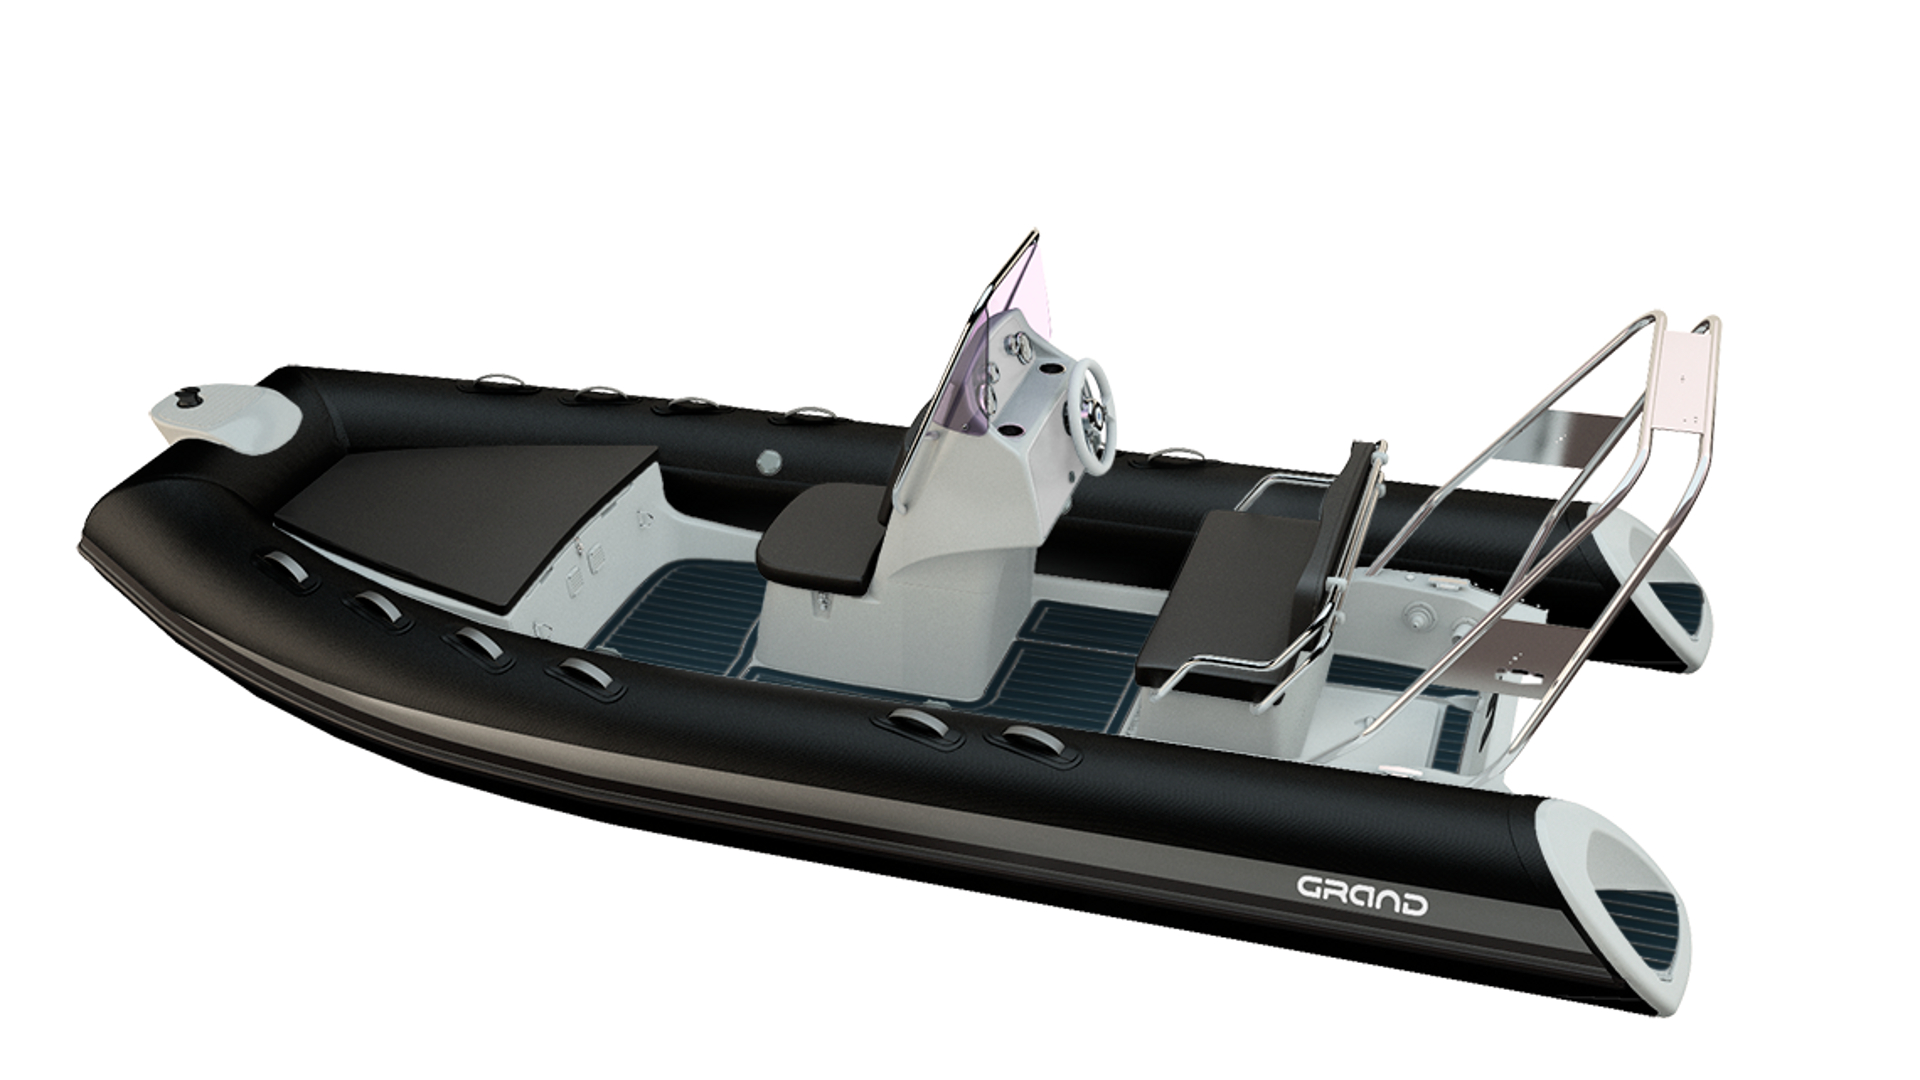 Надувная лодка с жестким дном GRAND Silver Line S520L, Надувная лодка GRAND Silver Line S520L, GRAND Silver Line S520L, GRAND Silver Line S520LF, GRAND S520L, GRAND S520LF, GRAND S520, Rigid Inflatable Boats GRAND, RIB GRAND